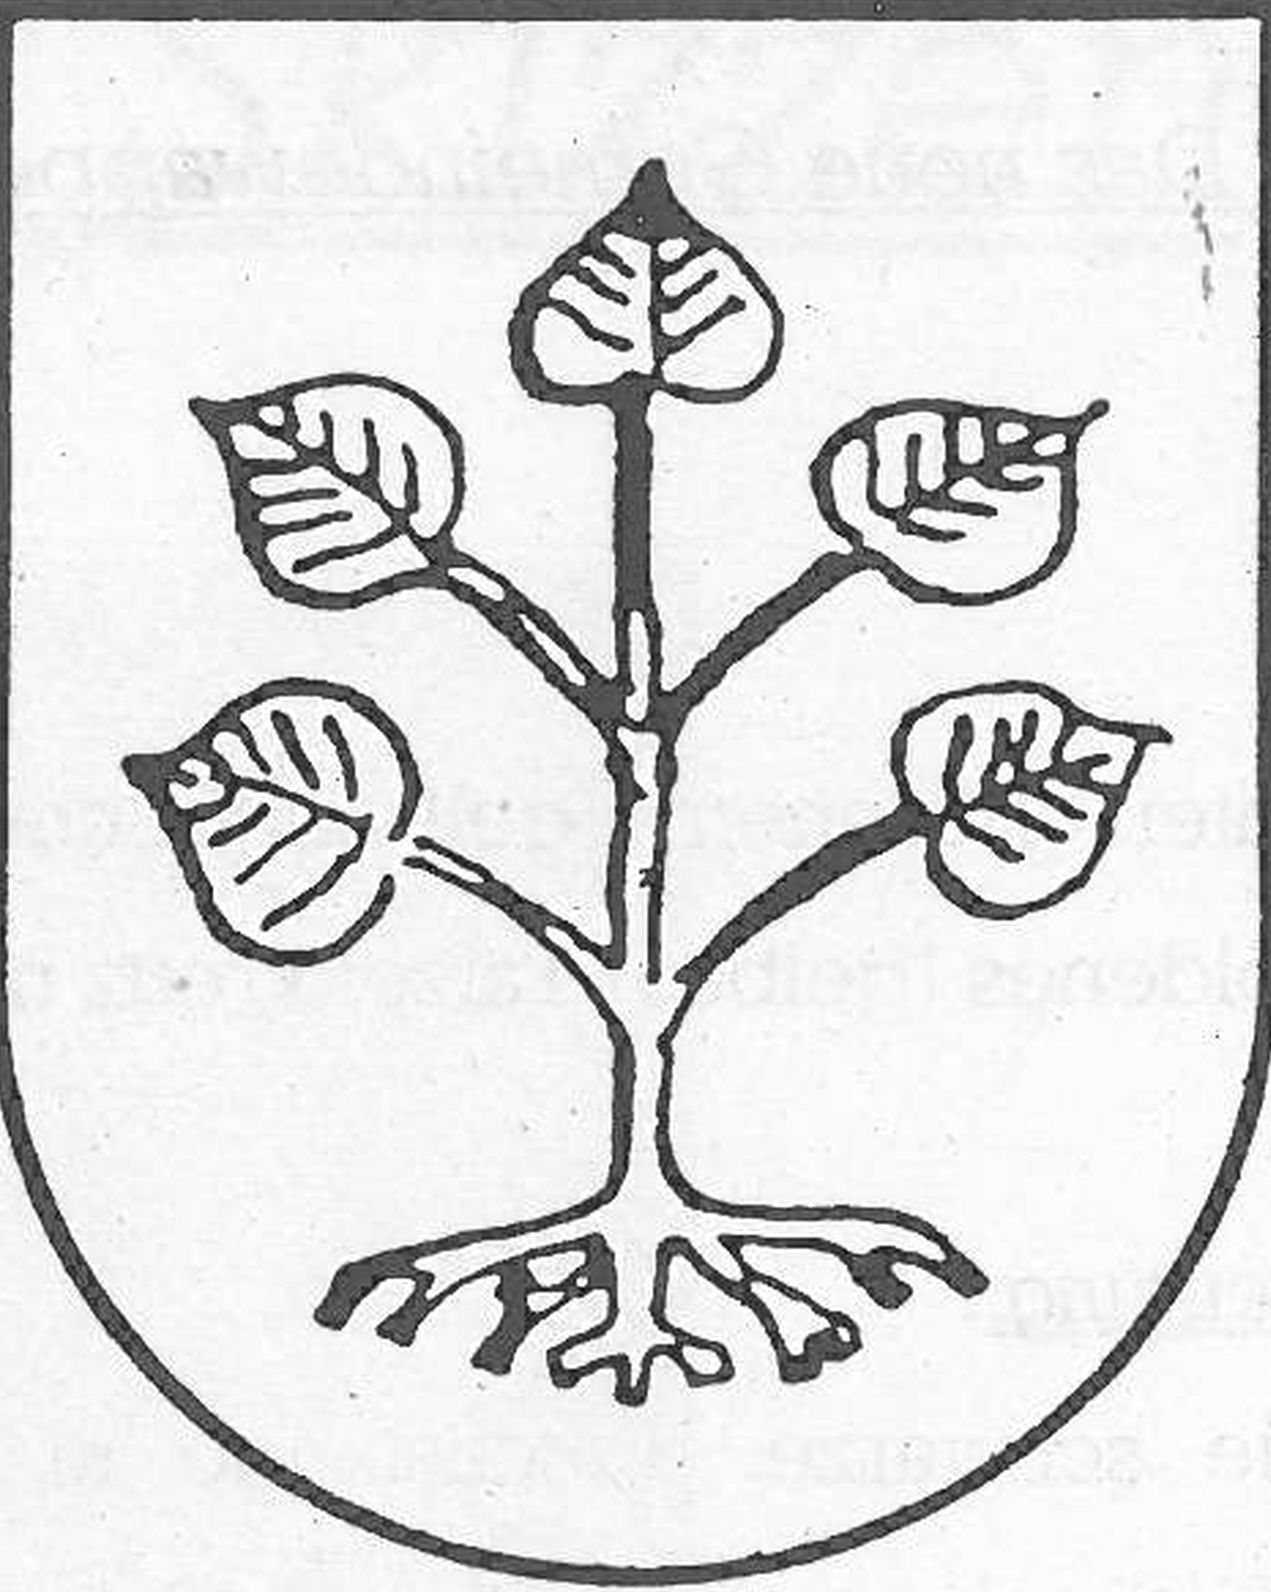  Schopflocher Skizzen Altes Wappen Unteriflingen - Bild wird mit einem klick vergrößert 